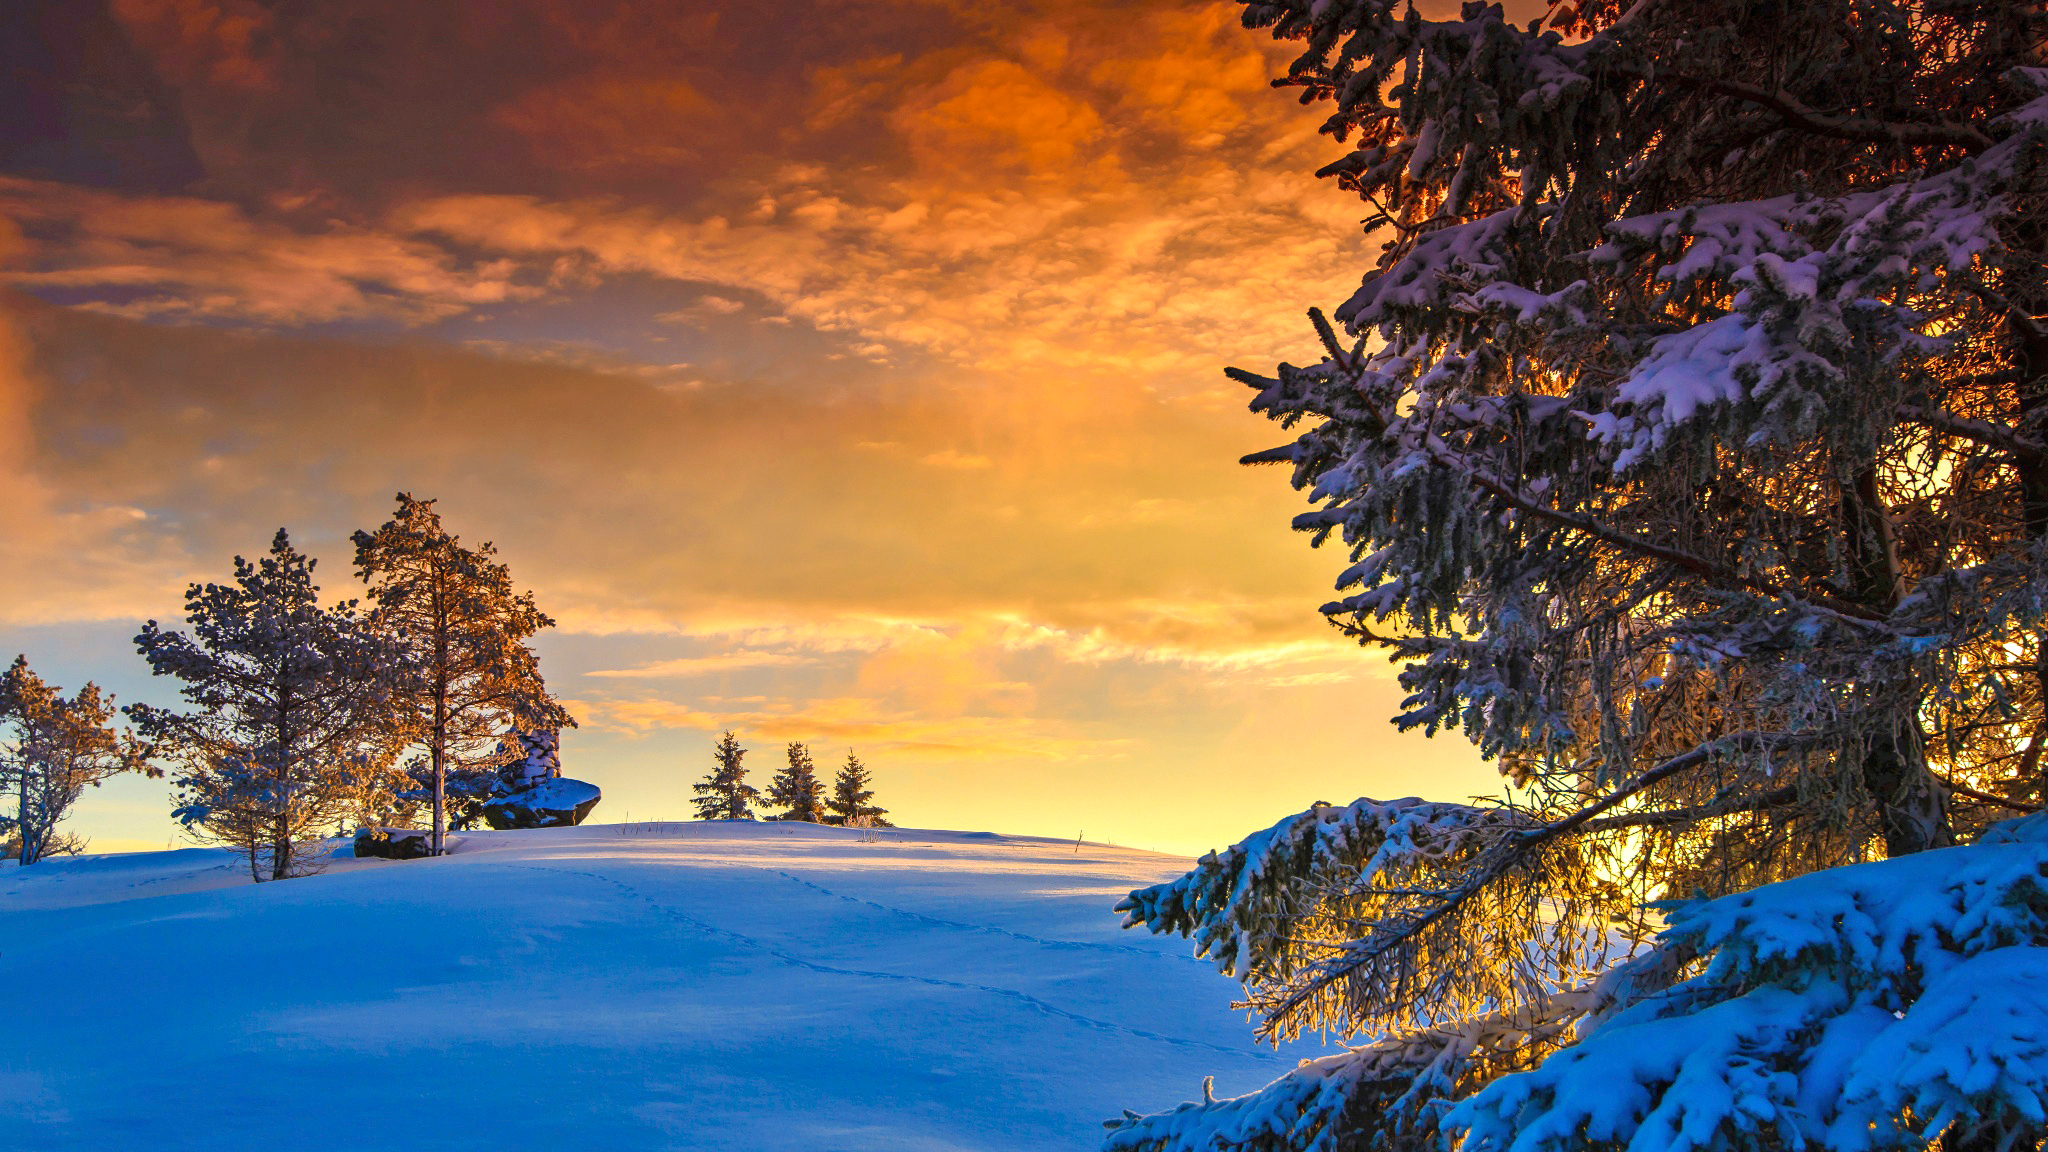 Скачать обои бесплатно Зима, Природа, Закат, Облака, Снег, Дерево, Ландшафт, Земля/природа картинка на рабочий стол ПК